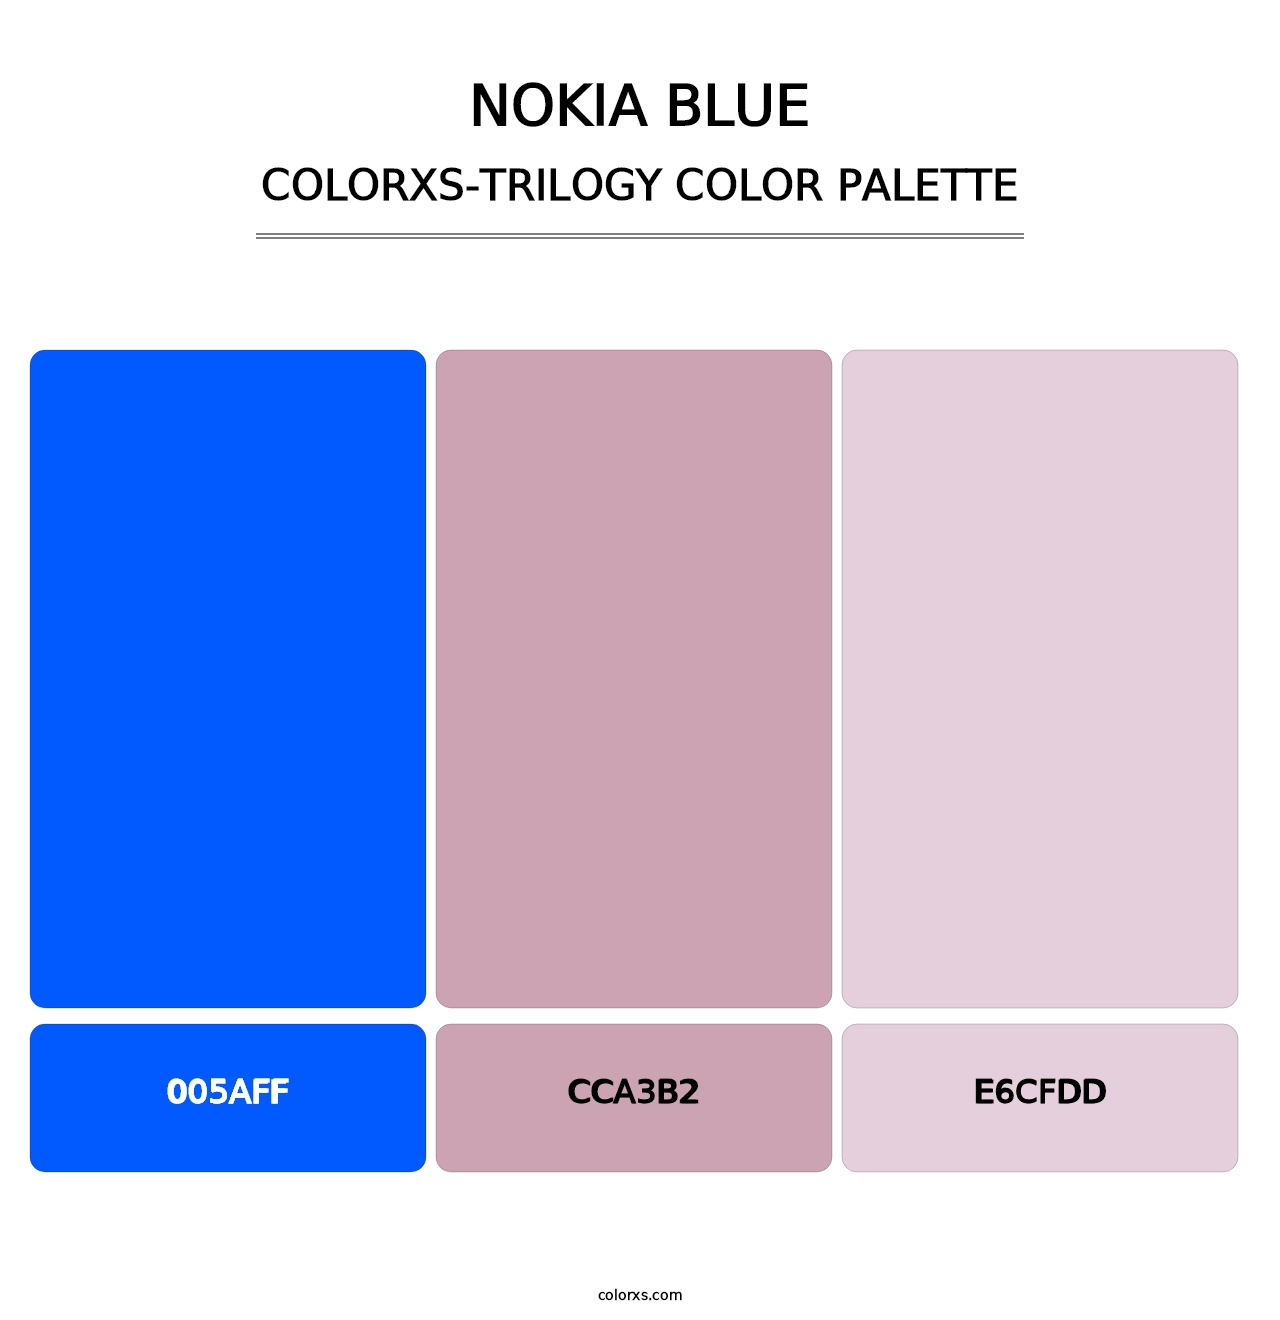 Nokia Blue - Colorxs Trilogy Palette